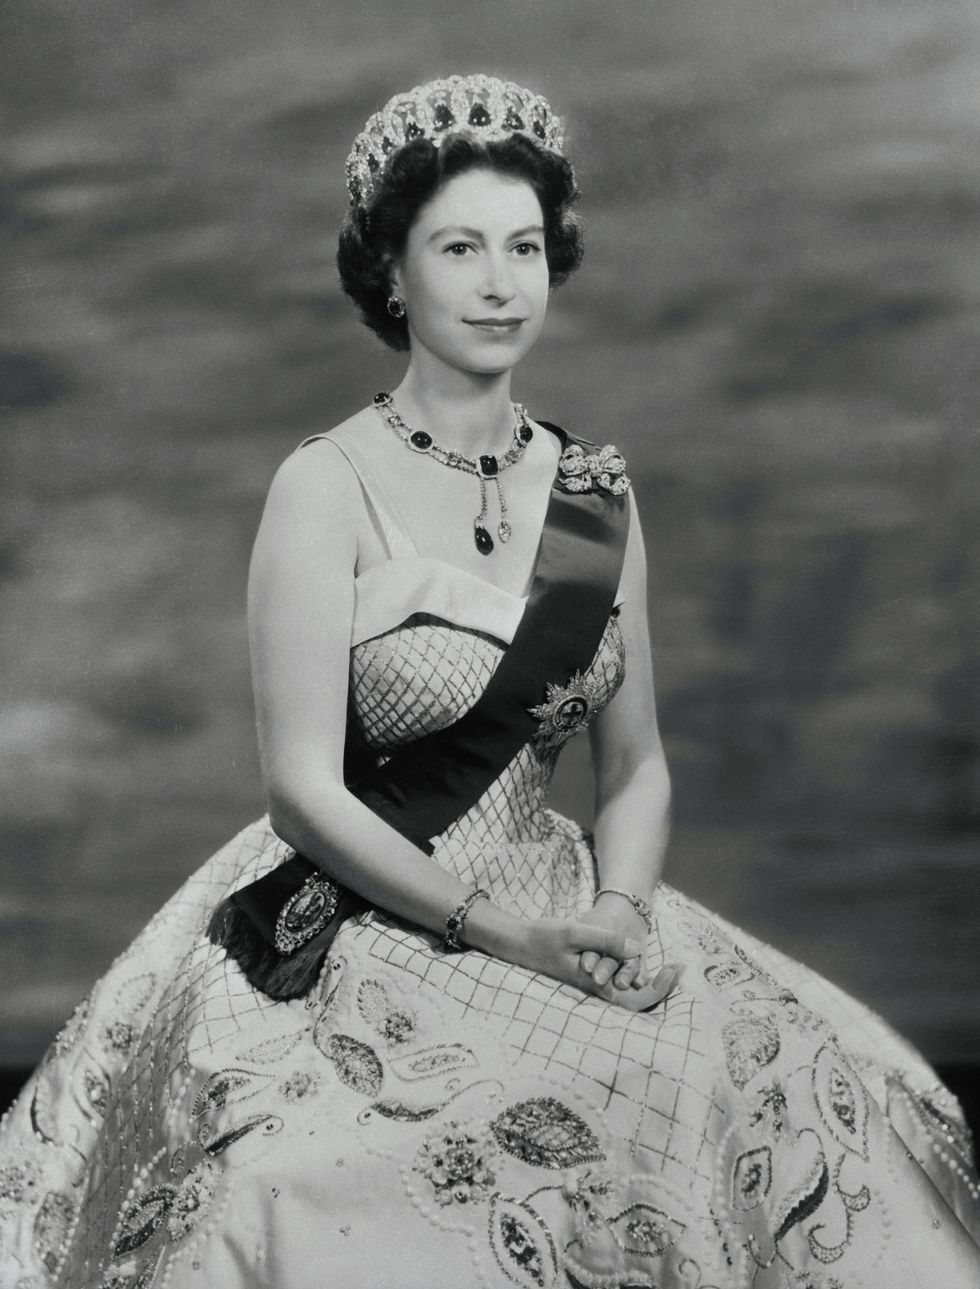 queen elizabeth posing in royal attire